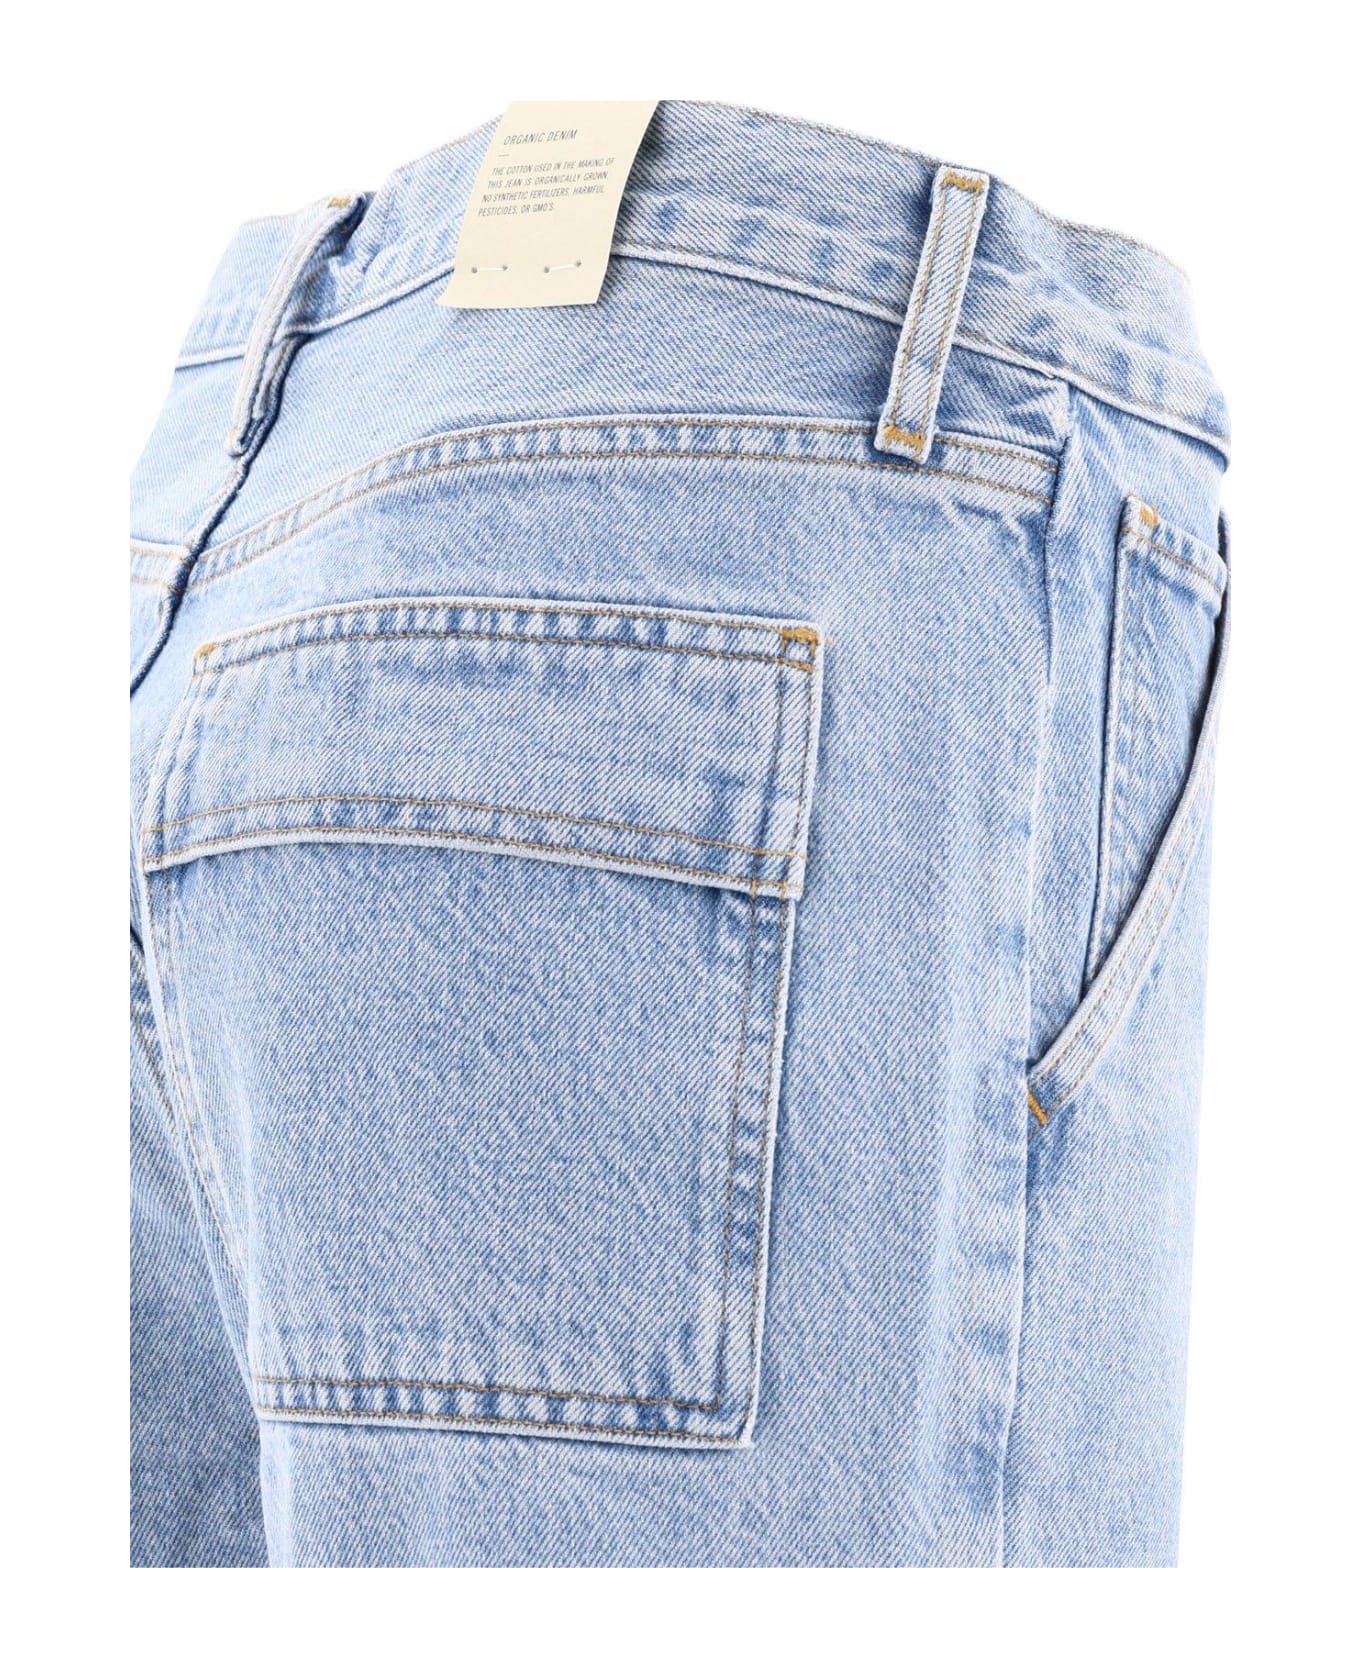 AGOLDE Cooper Pocket Detailed Jeans - BLUE